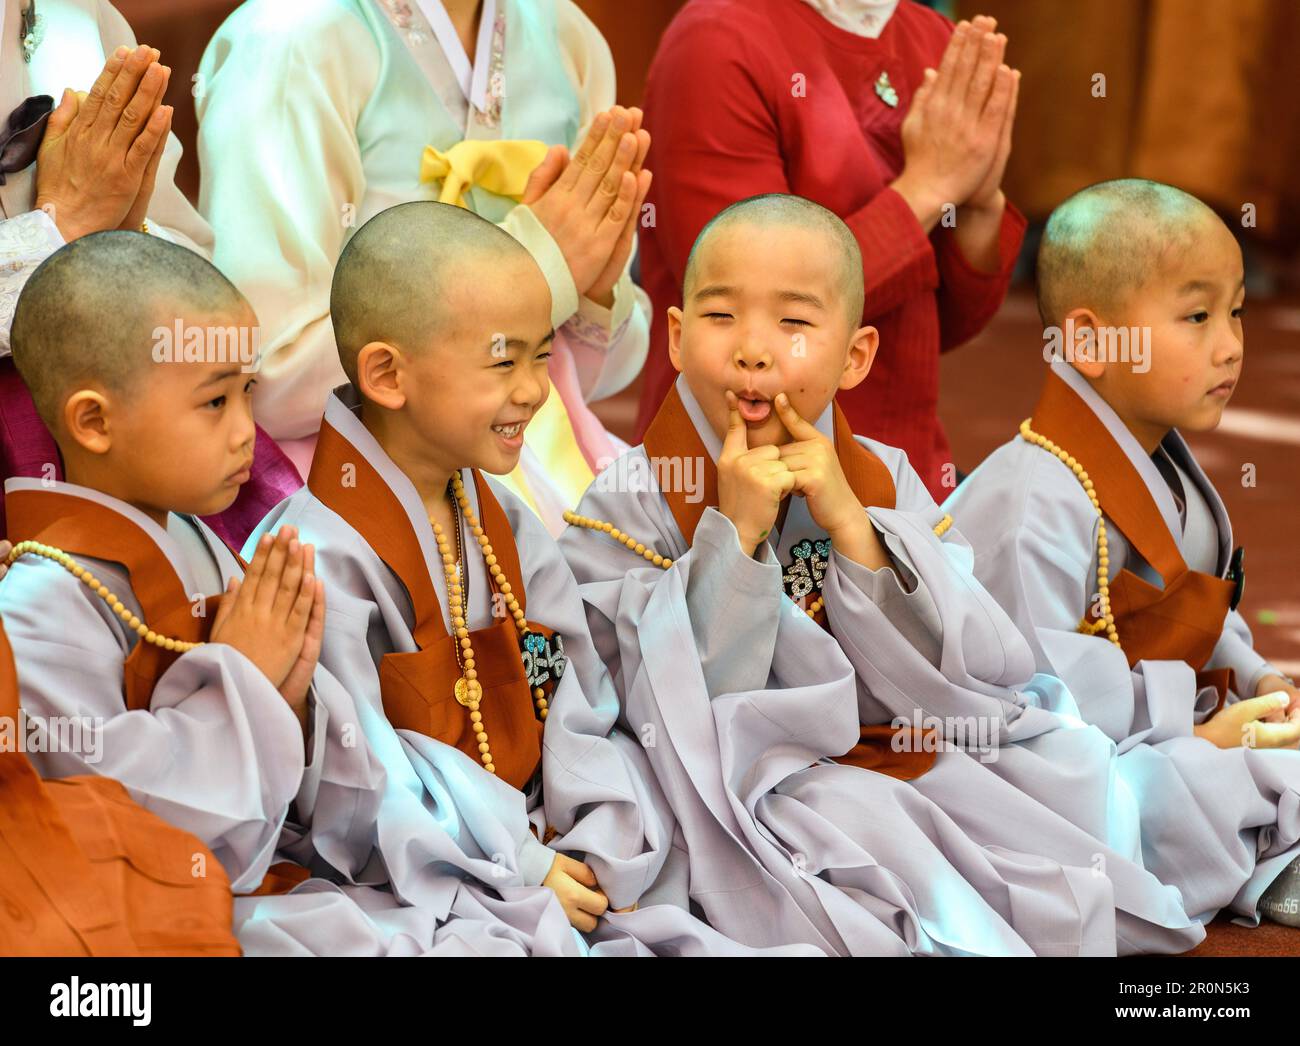 Seúl, Corea del Sur. 09th de mayo de 2023. Niños monjes surcoreanos asisten a un evento para celebrar el próximo cumpleaños de Buda (27 de mayo de 2023 de KST) en el Templo Jogye en Seúl. Los niños pequeños son invitados anualmente a convertirse en monjes budistas por un período de tres semanas. El cumpleaños de Buda es un festival budista que se celebra en la mayor parte de Asia oriental y del sur de Asia conmemorando el nacimiento del príncipe Siddhartha Gautama, más tarde el Buda Gautama, que fue el fundador del budismo. Según la tradición budista, Buda Gautama nació en Lumbini, Nepal. Crédito: SOPA Images Limited/Alamy Live News Foto de stock